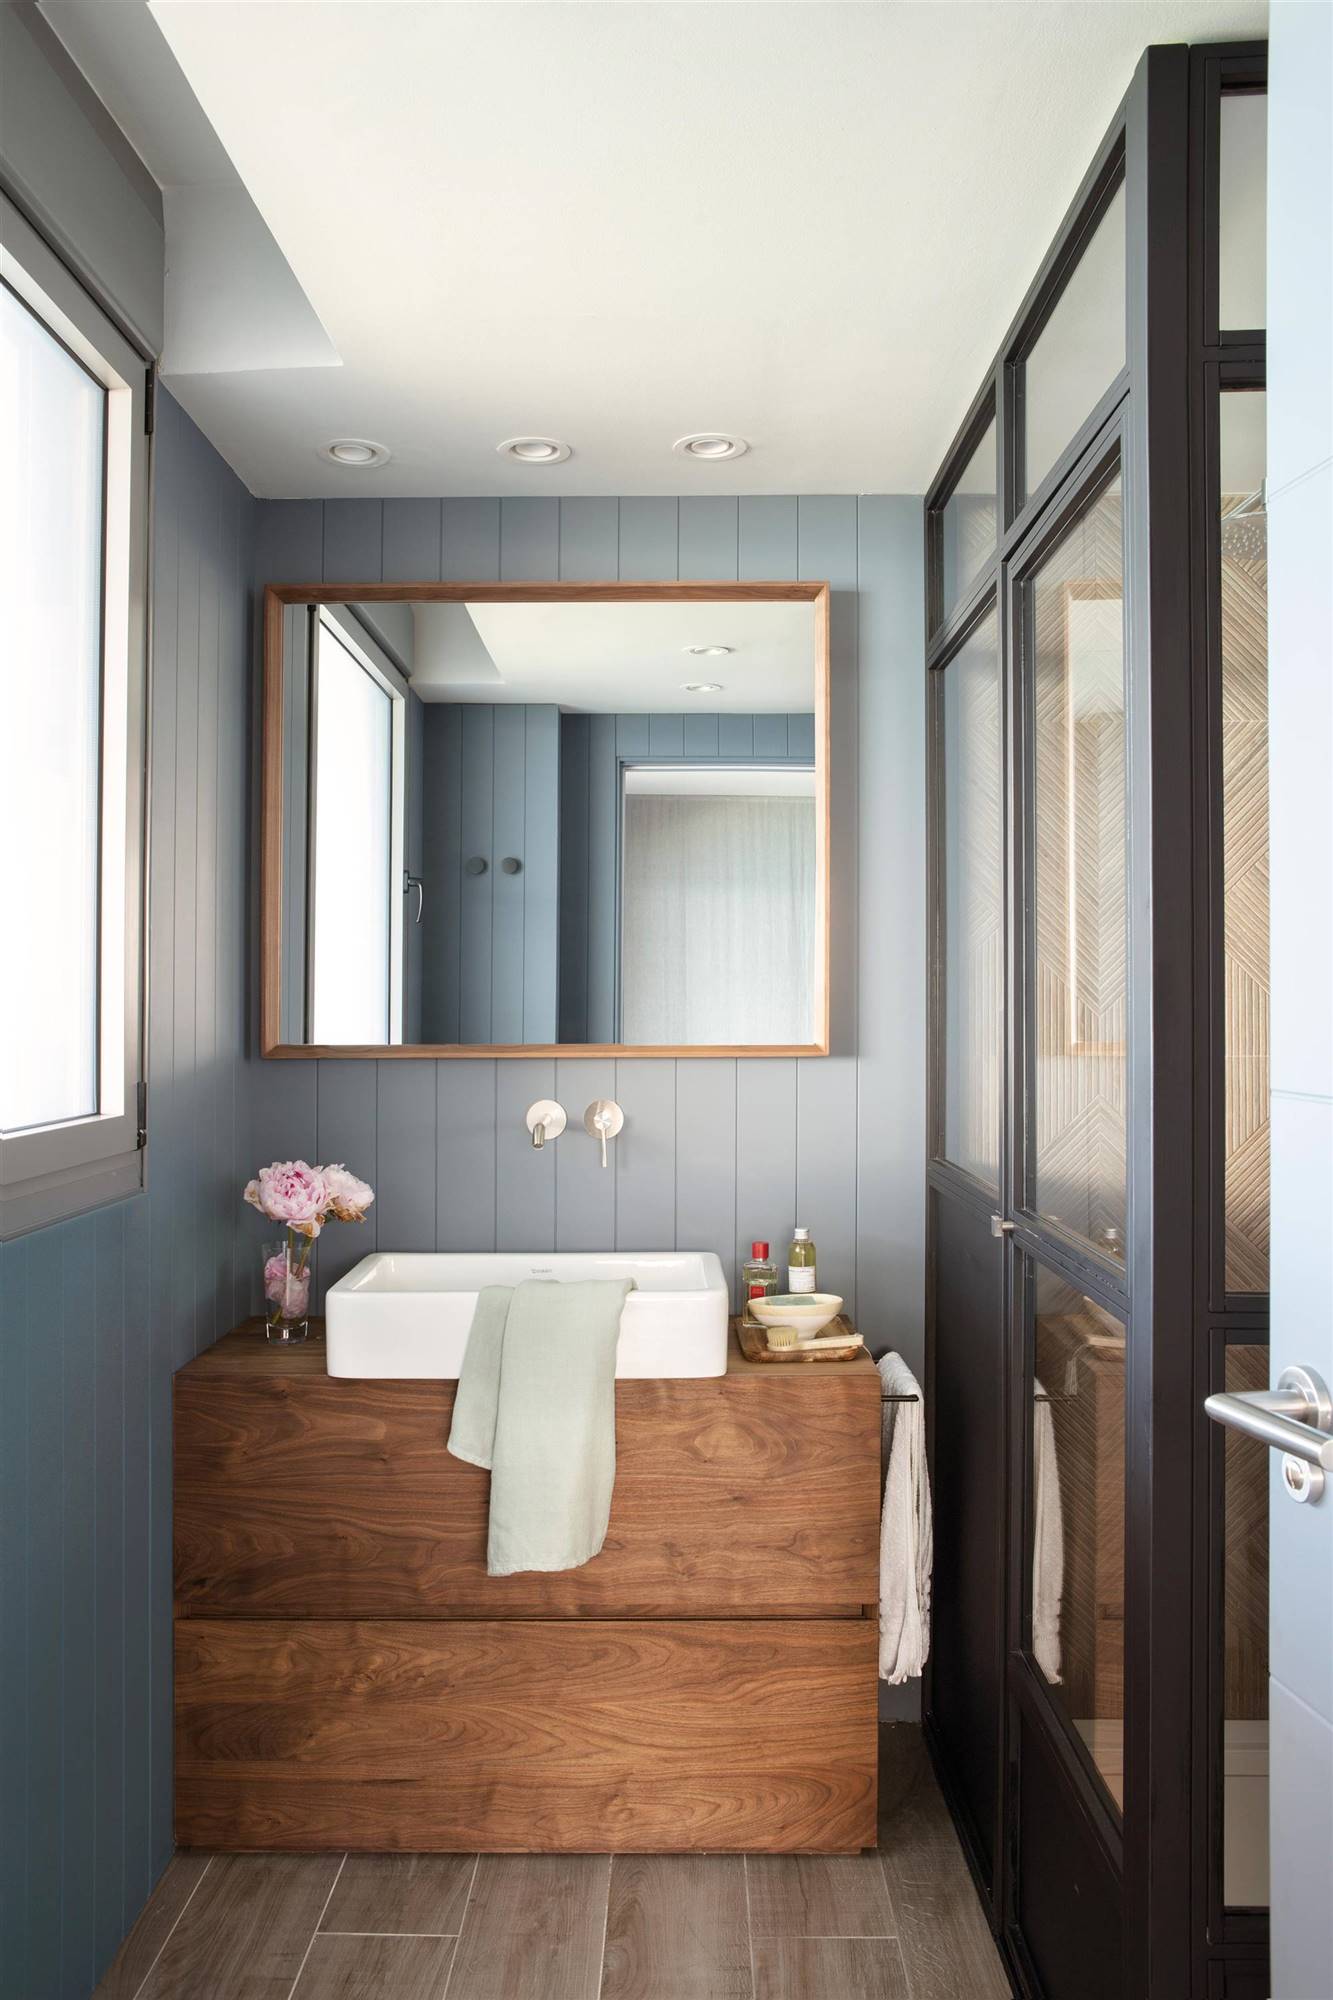 Baño con cabina de ducha, mueble bajolavabo de madera y paredes revestidas con lamas de color gris azulado 00528780